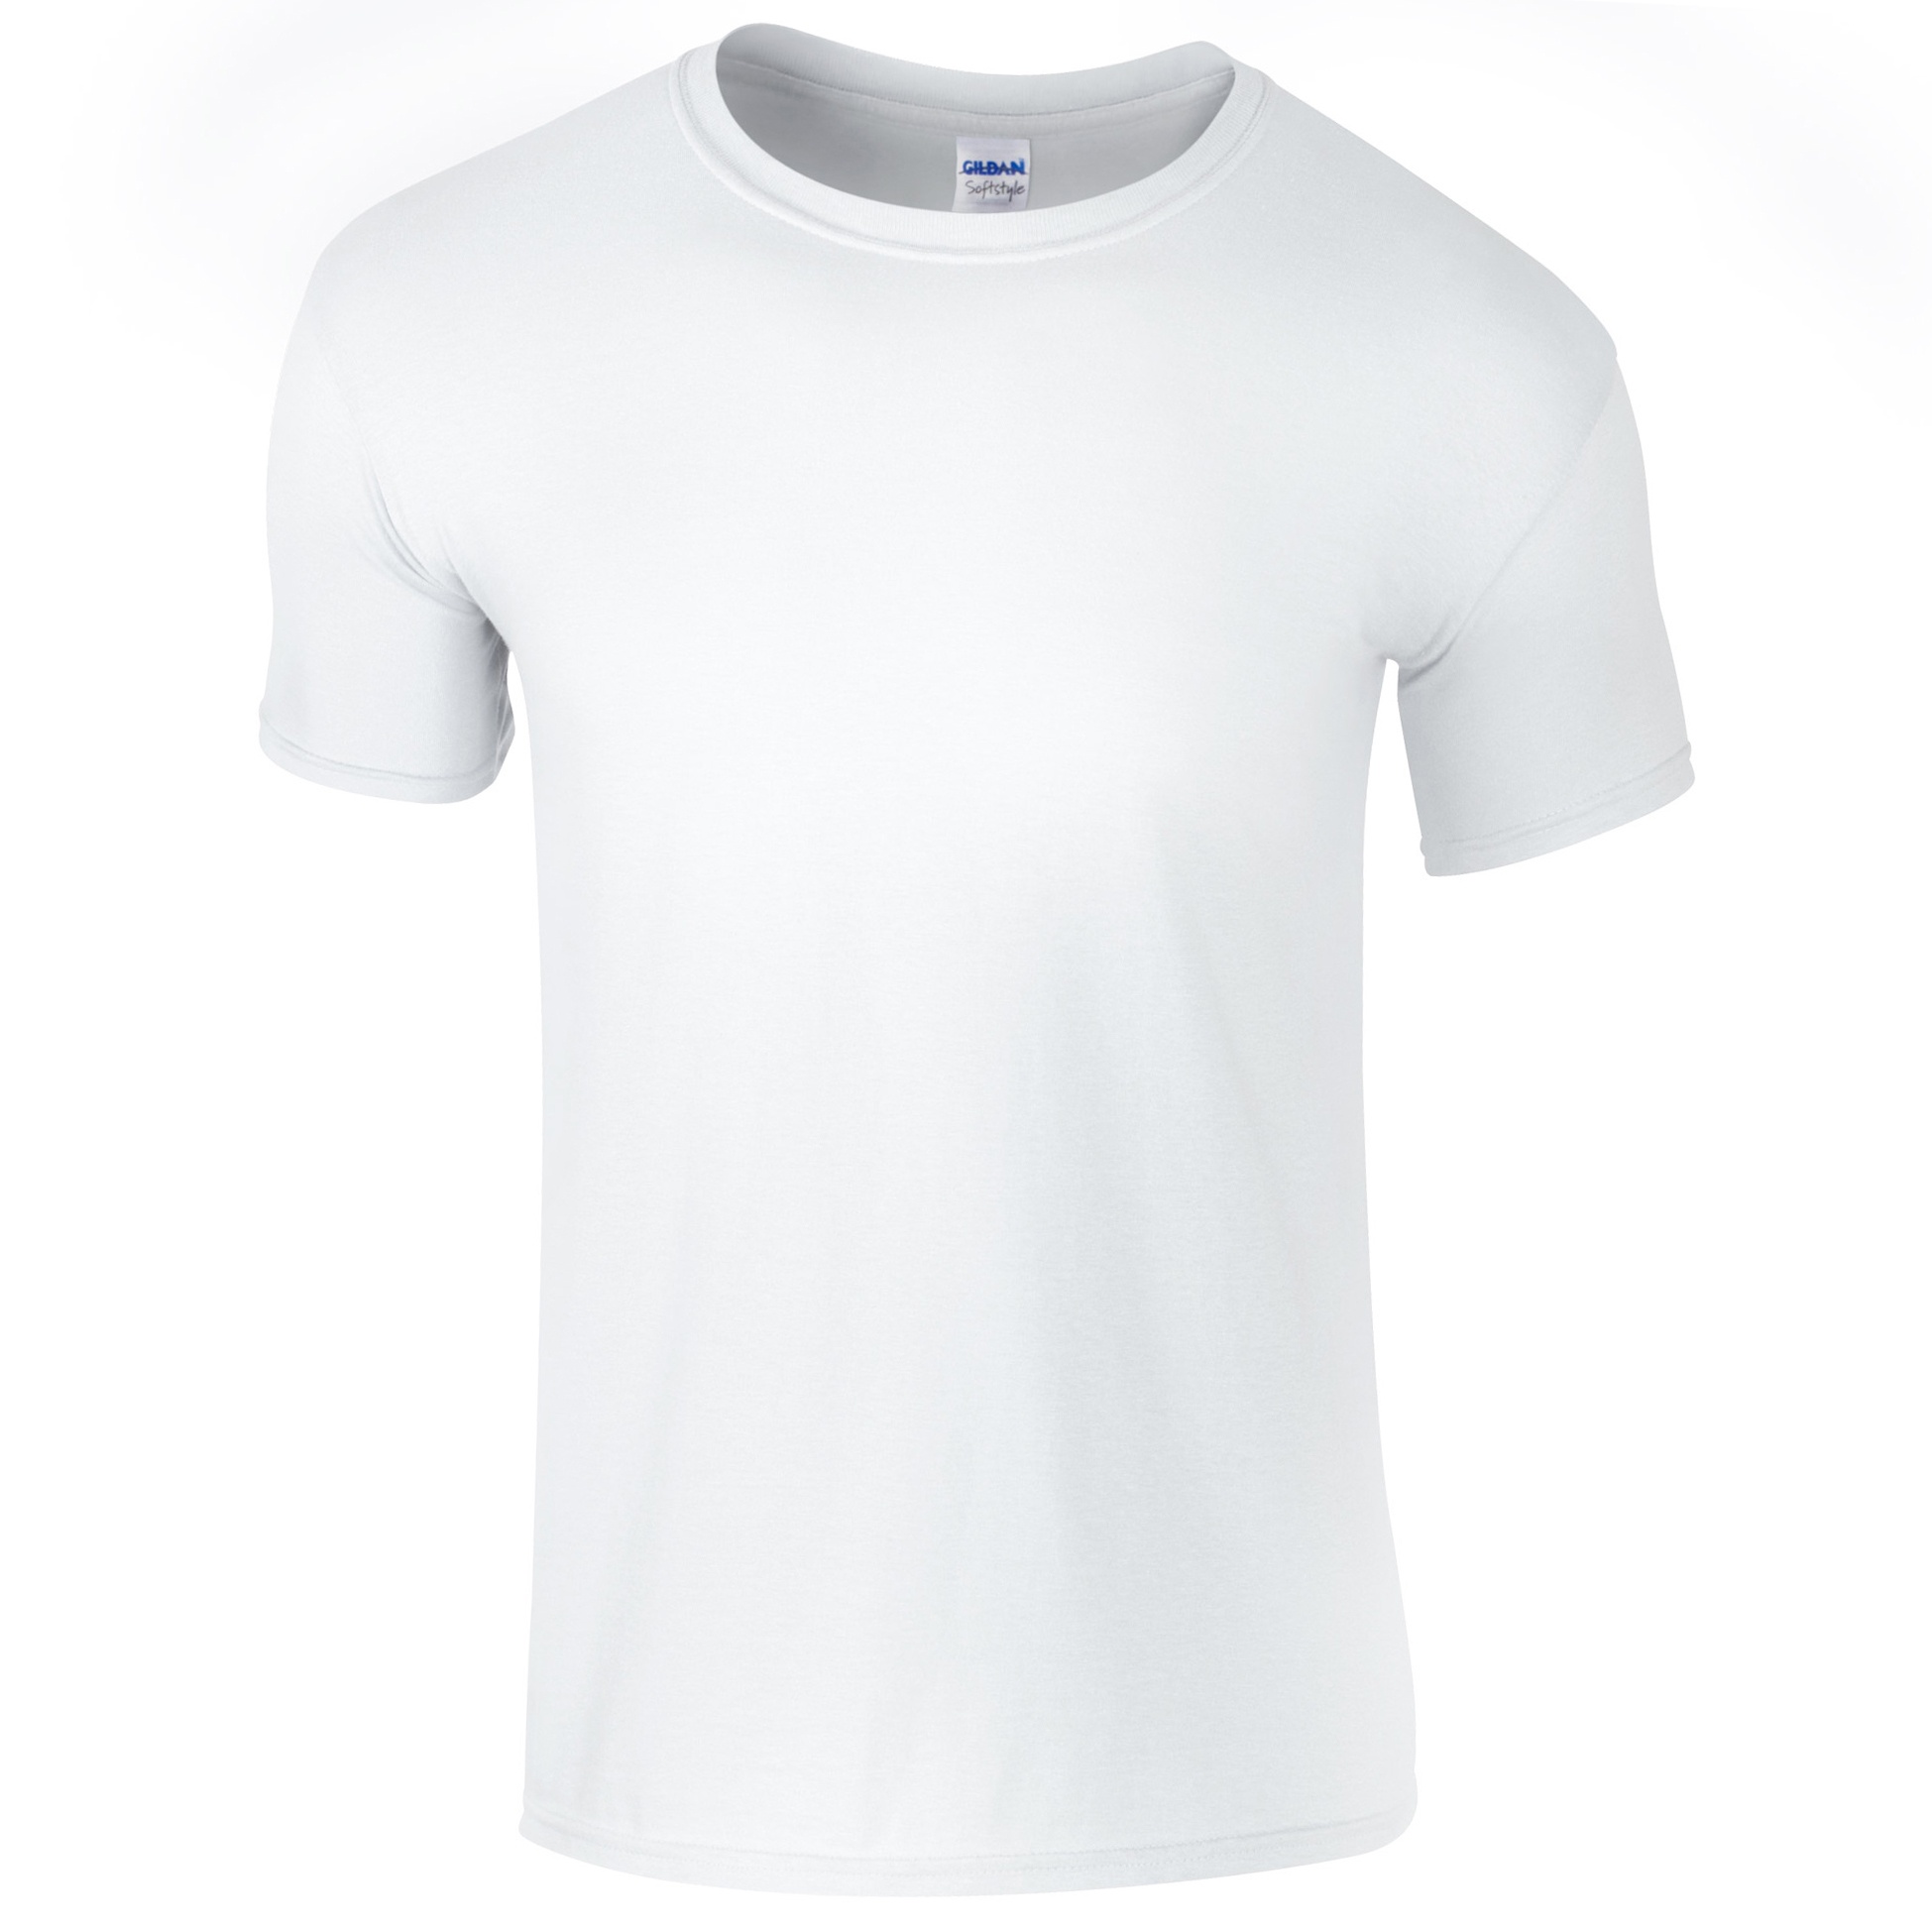 Camiseta De Manga Corta Suave Básica 100% Algodón Gordo Gildan - blanco - 